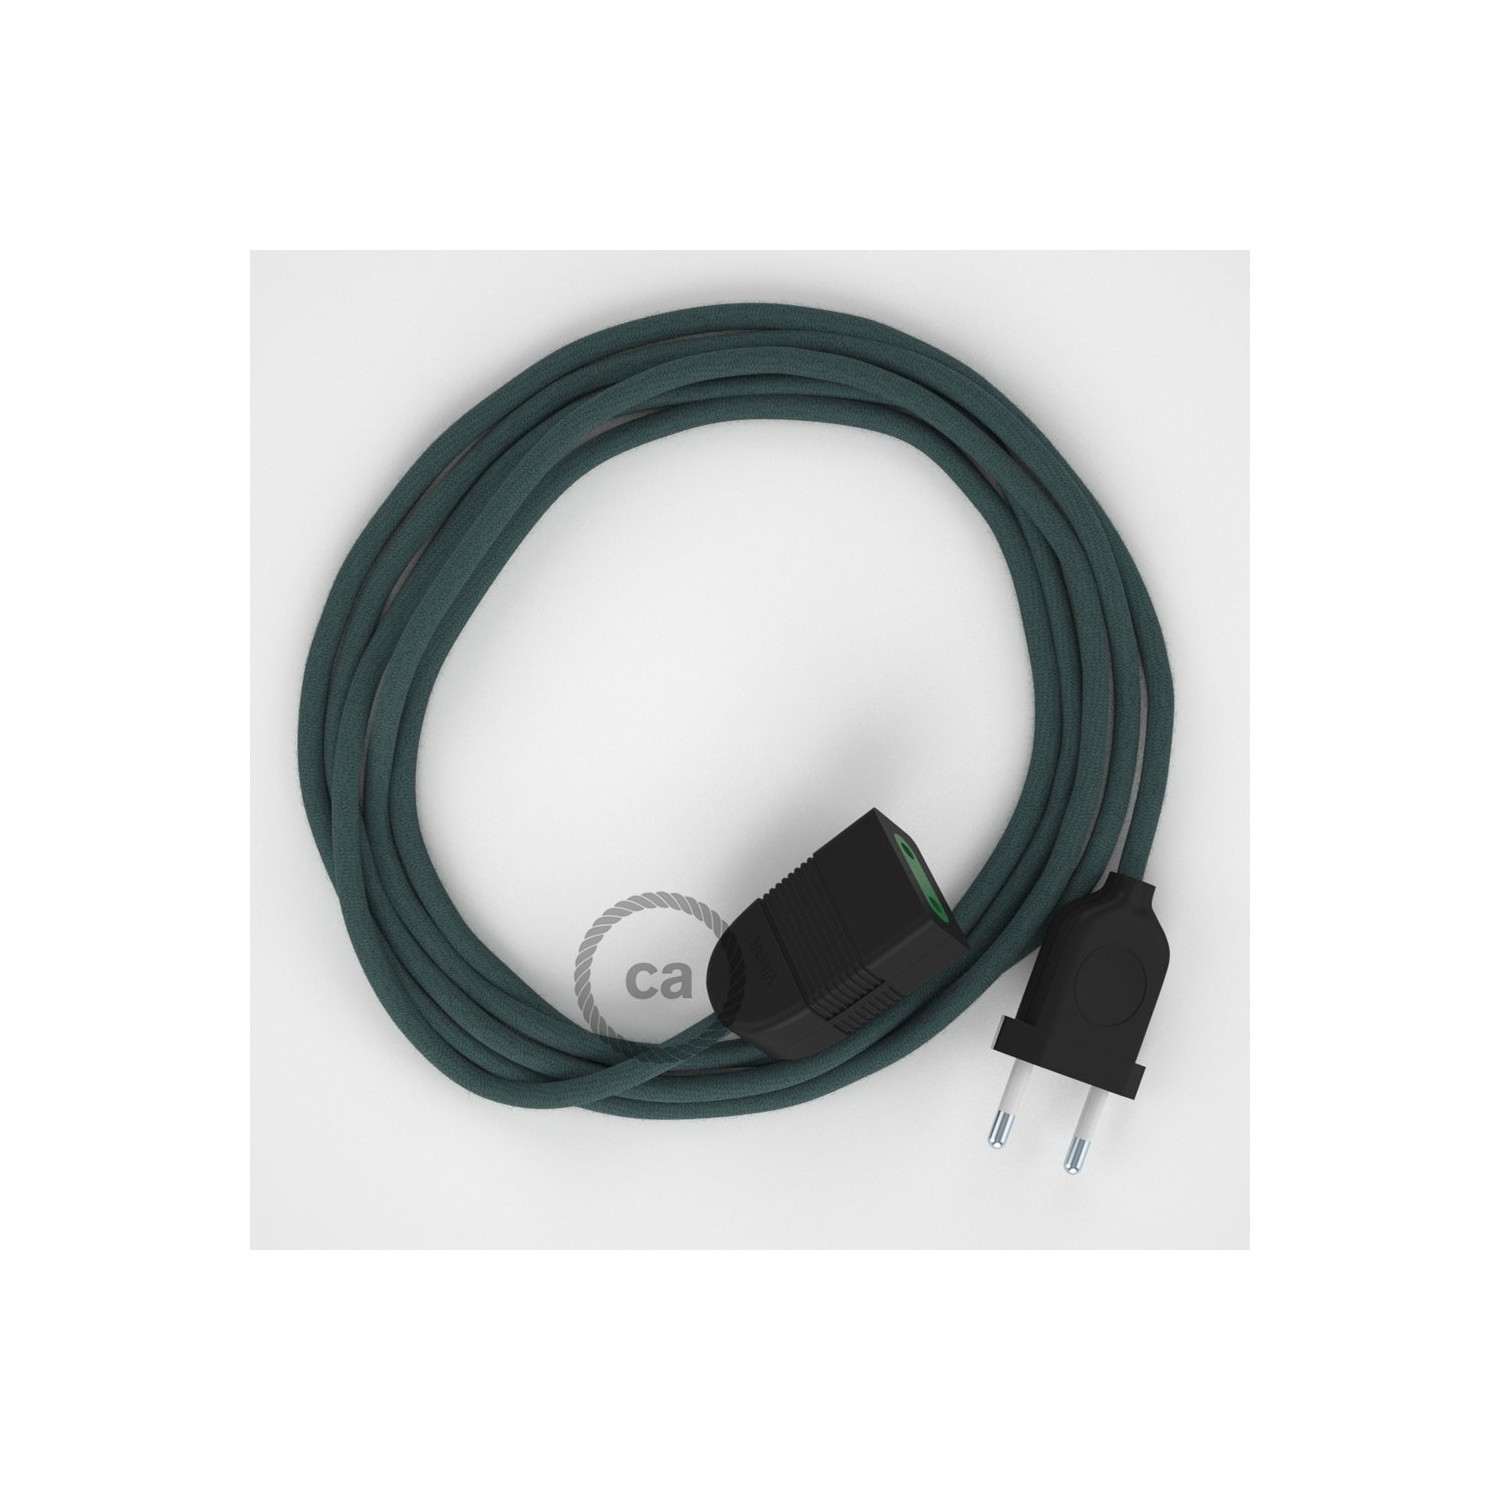 Kamenově šedý bavlněný RC30 2P 10A textilní prodlužovací elektrický kabel. Vyrobený v Itálii.